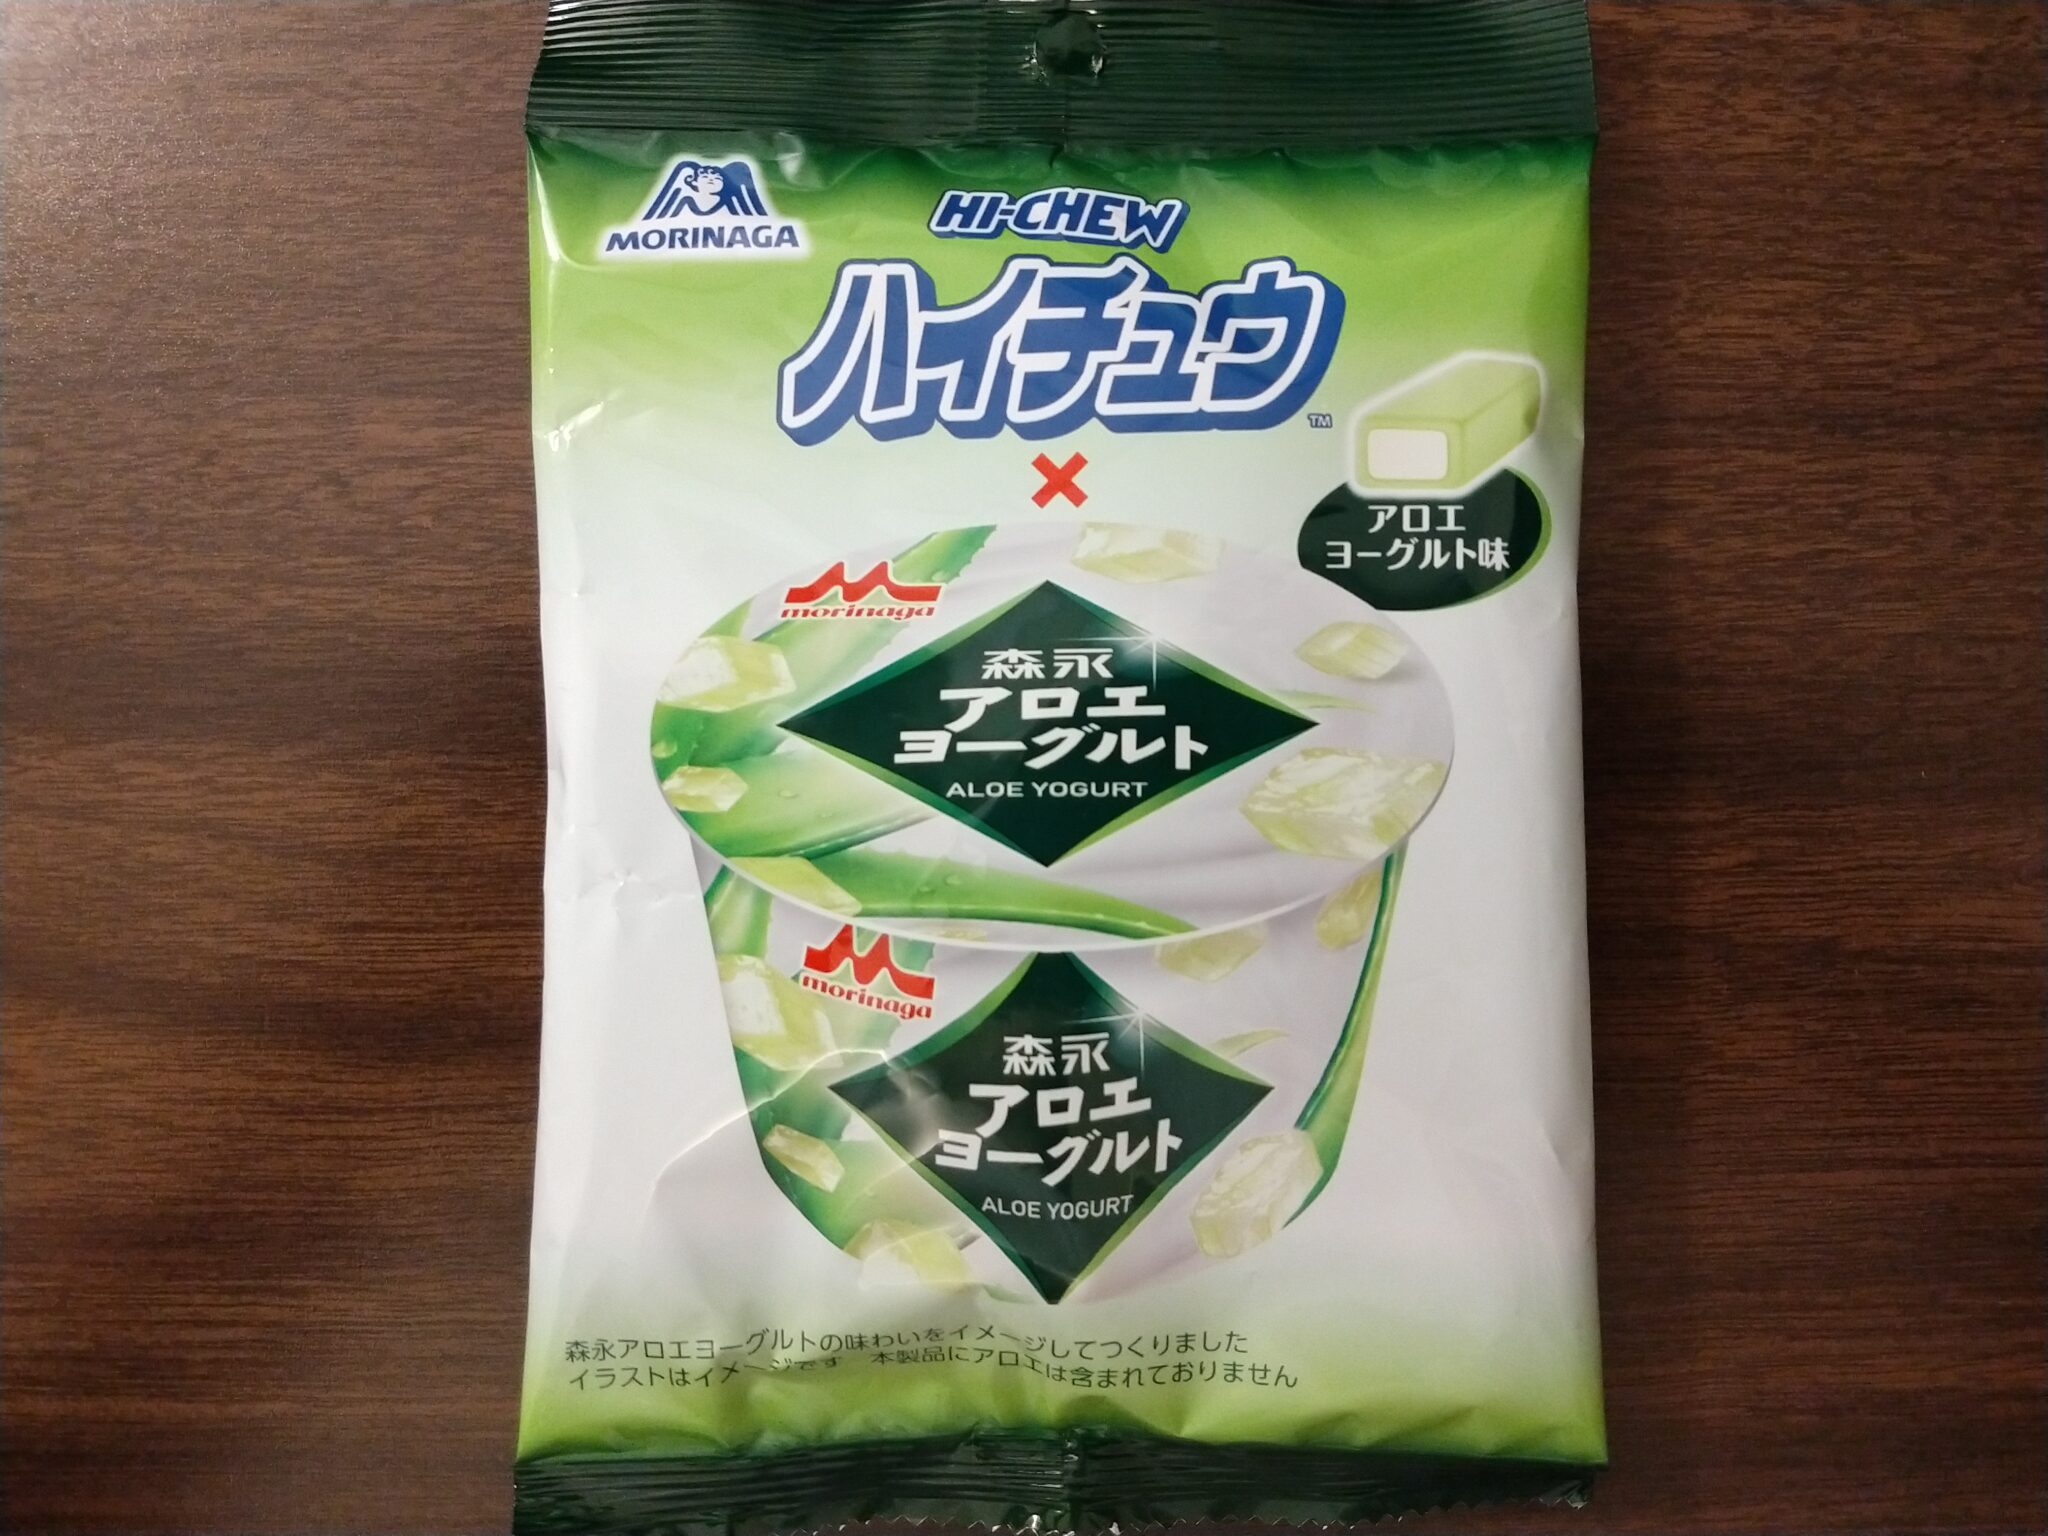 Hi-Chew – Aloe Yogurt